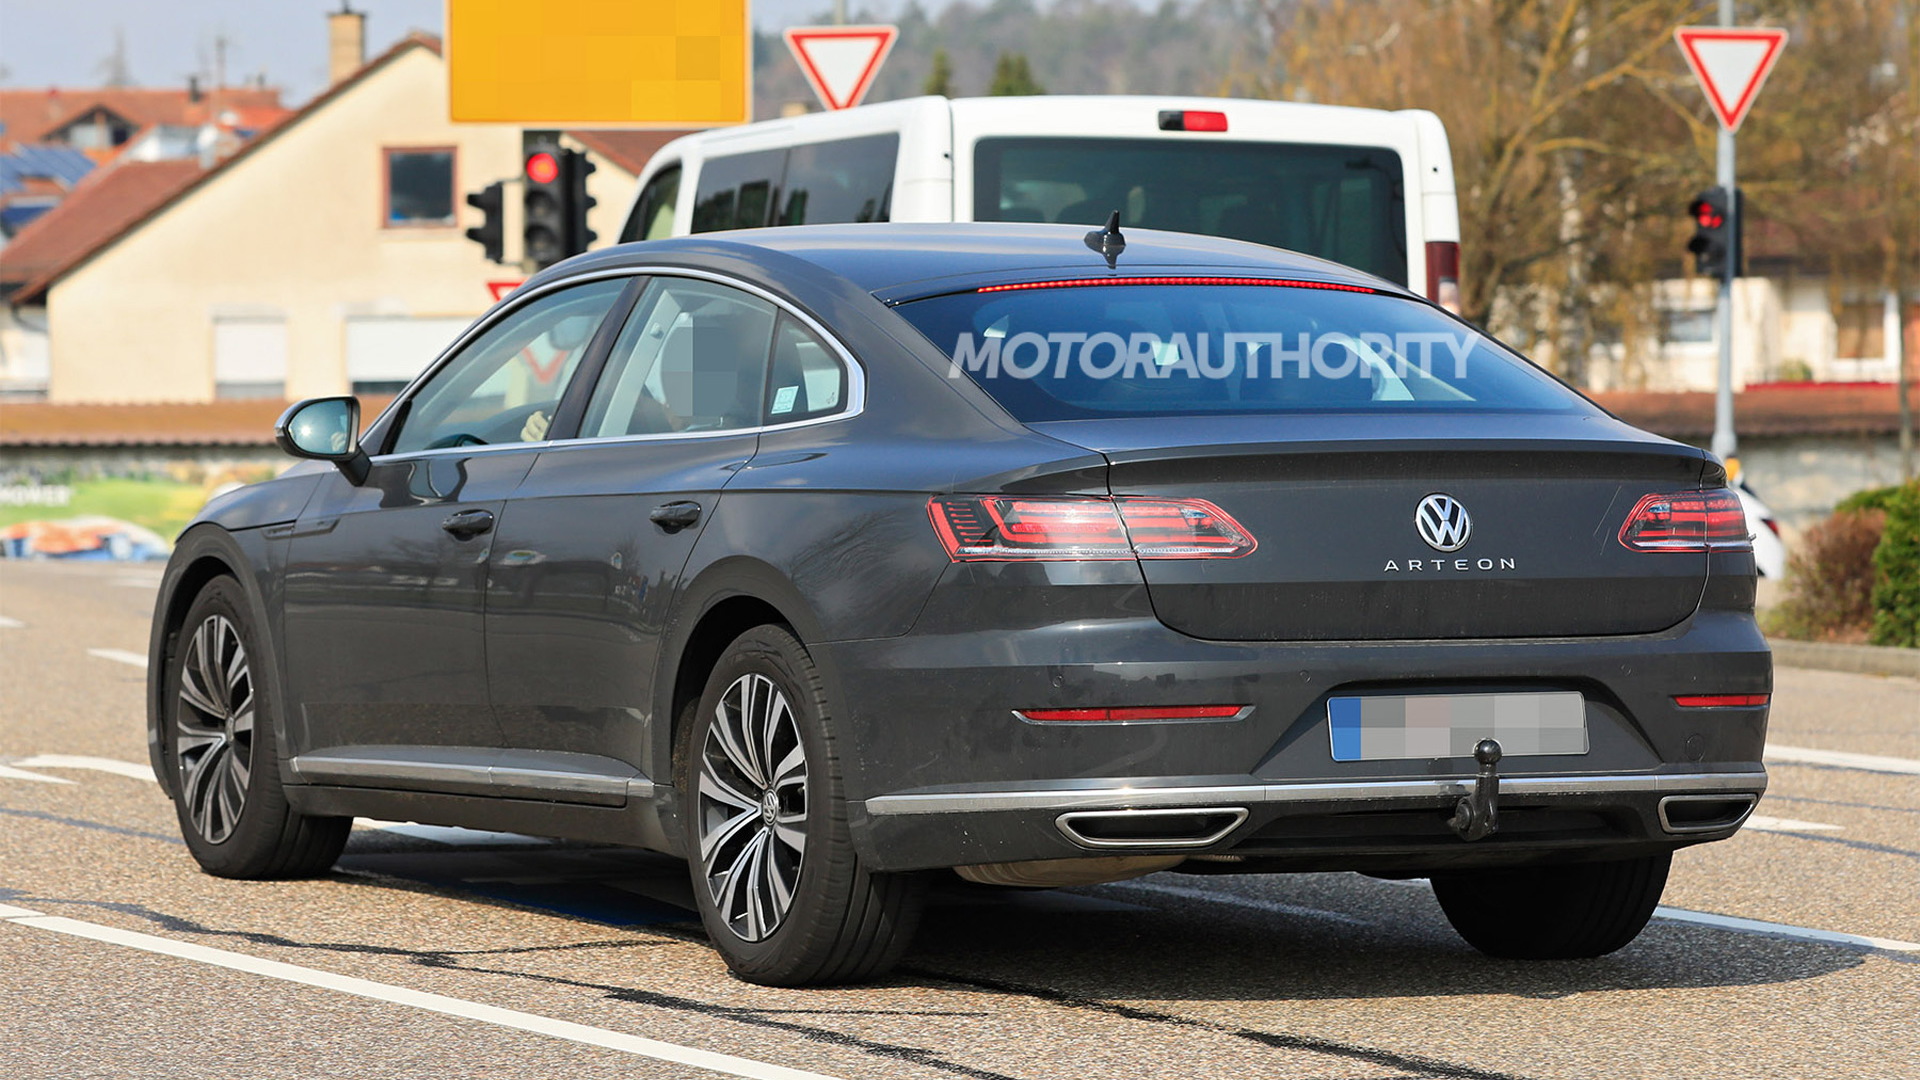 2021 Volkswagen Arteon facelift spy shots - Photo credit: S. Baldauf/SB-Medien